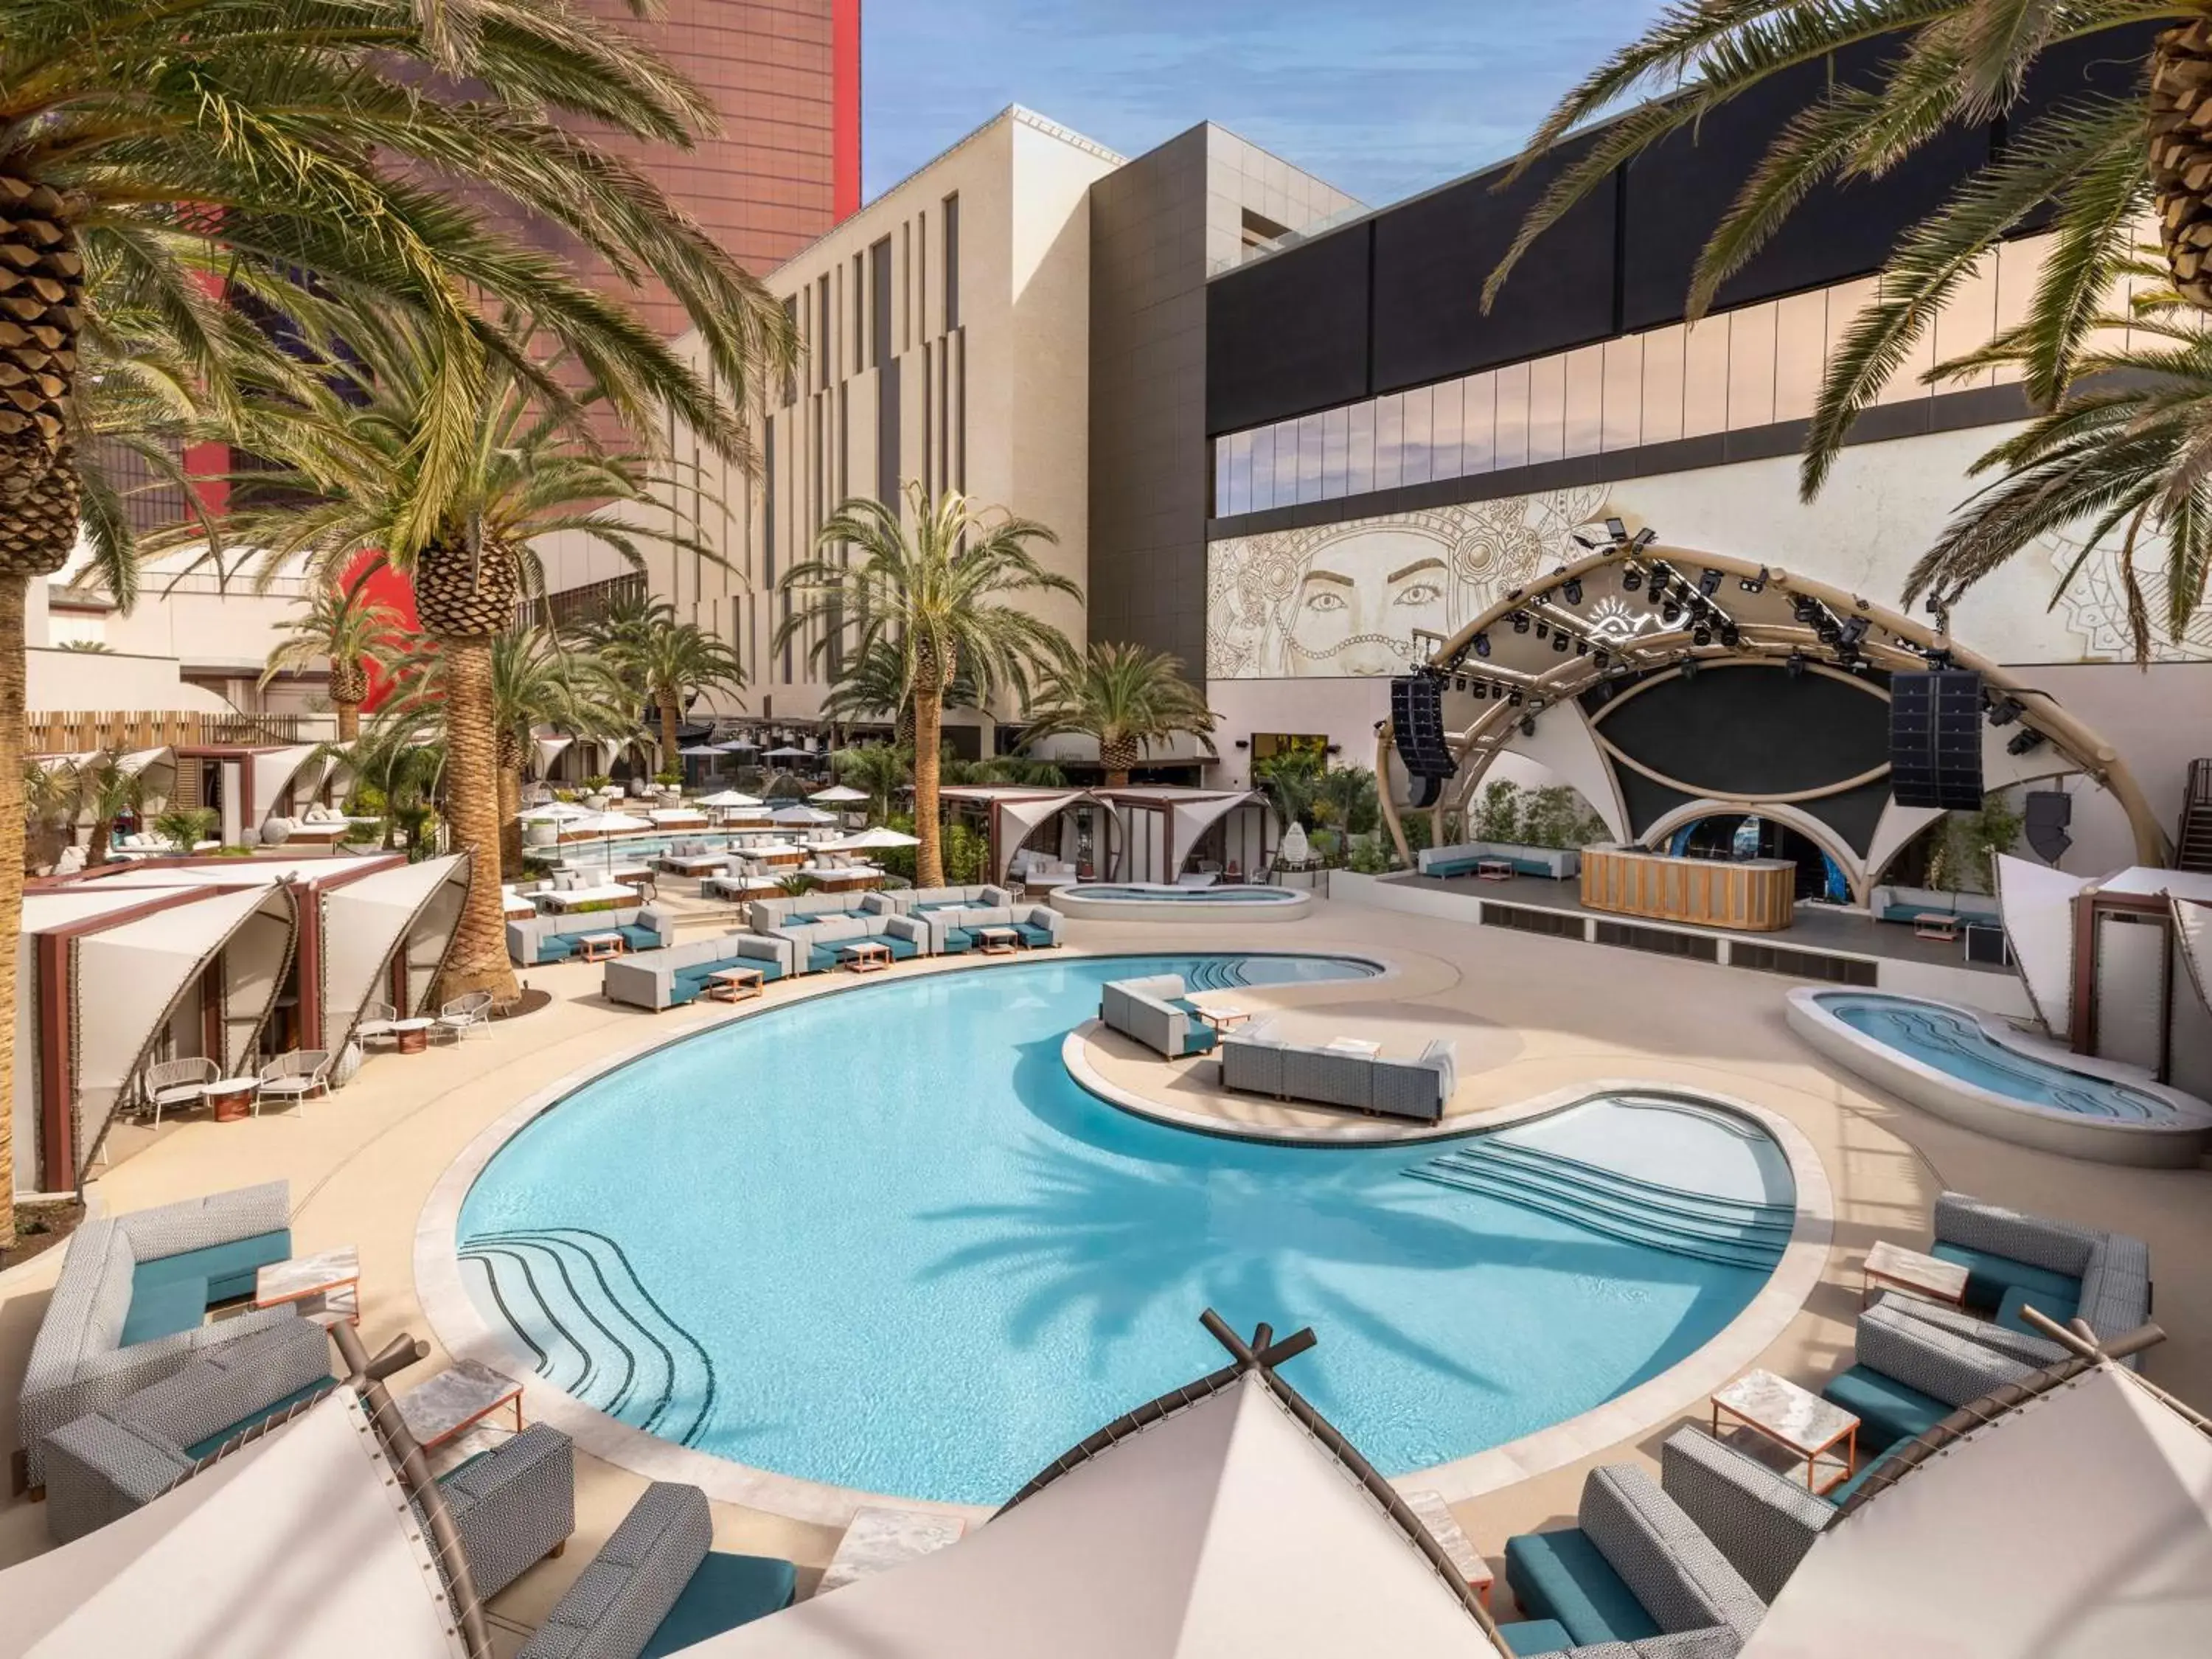 Pool View in Las Vegas Hilton At Resorts World